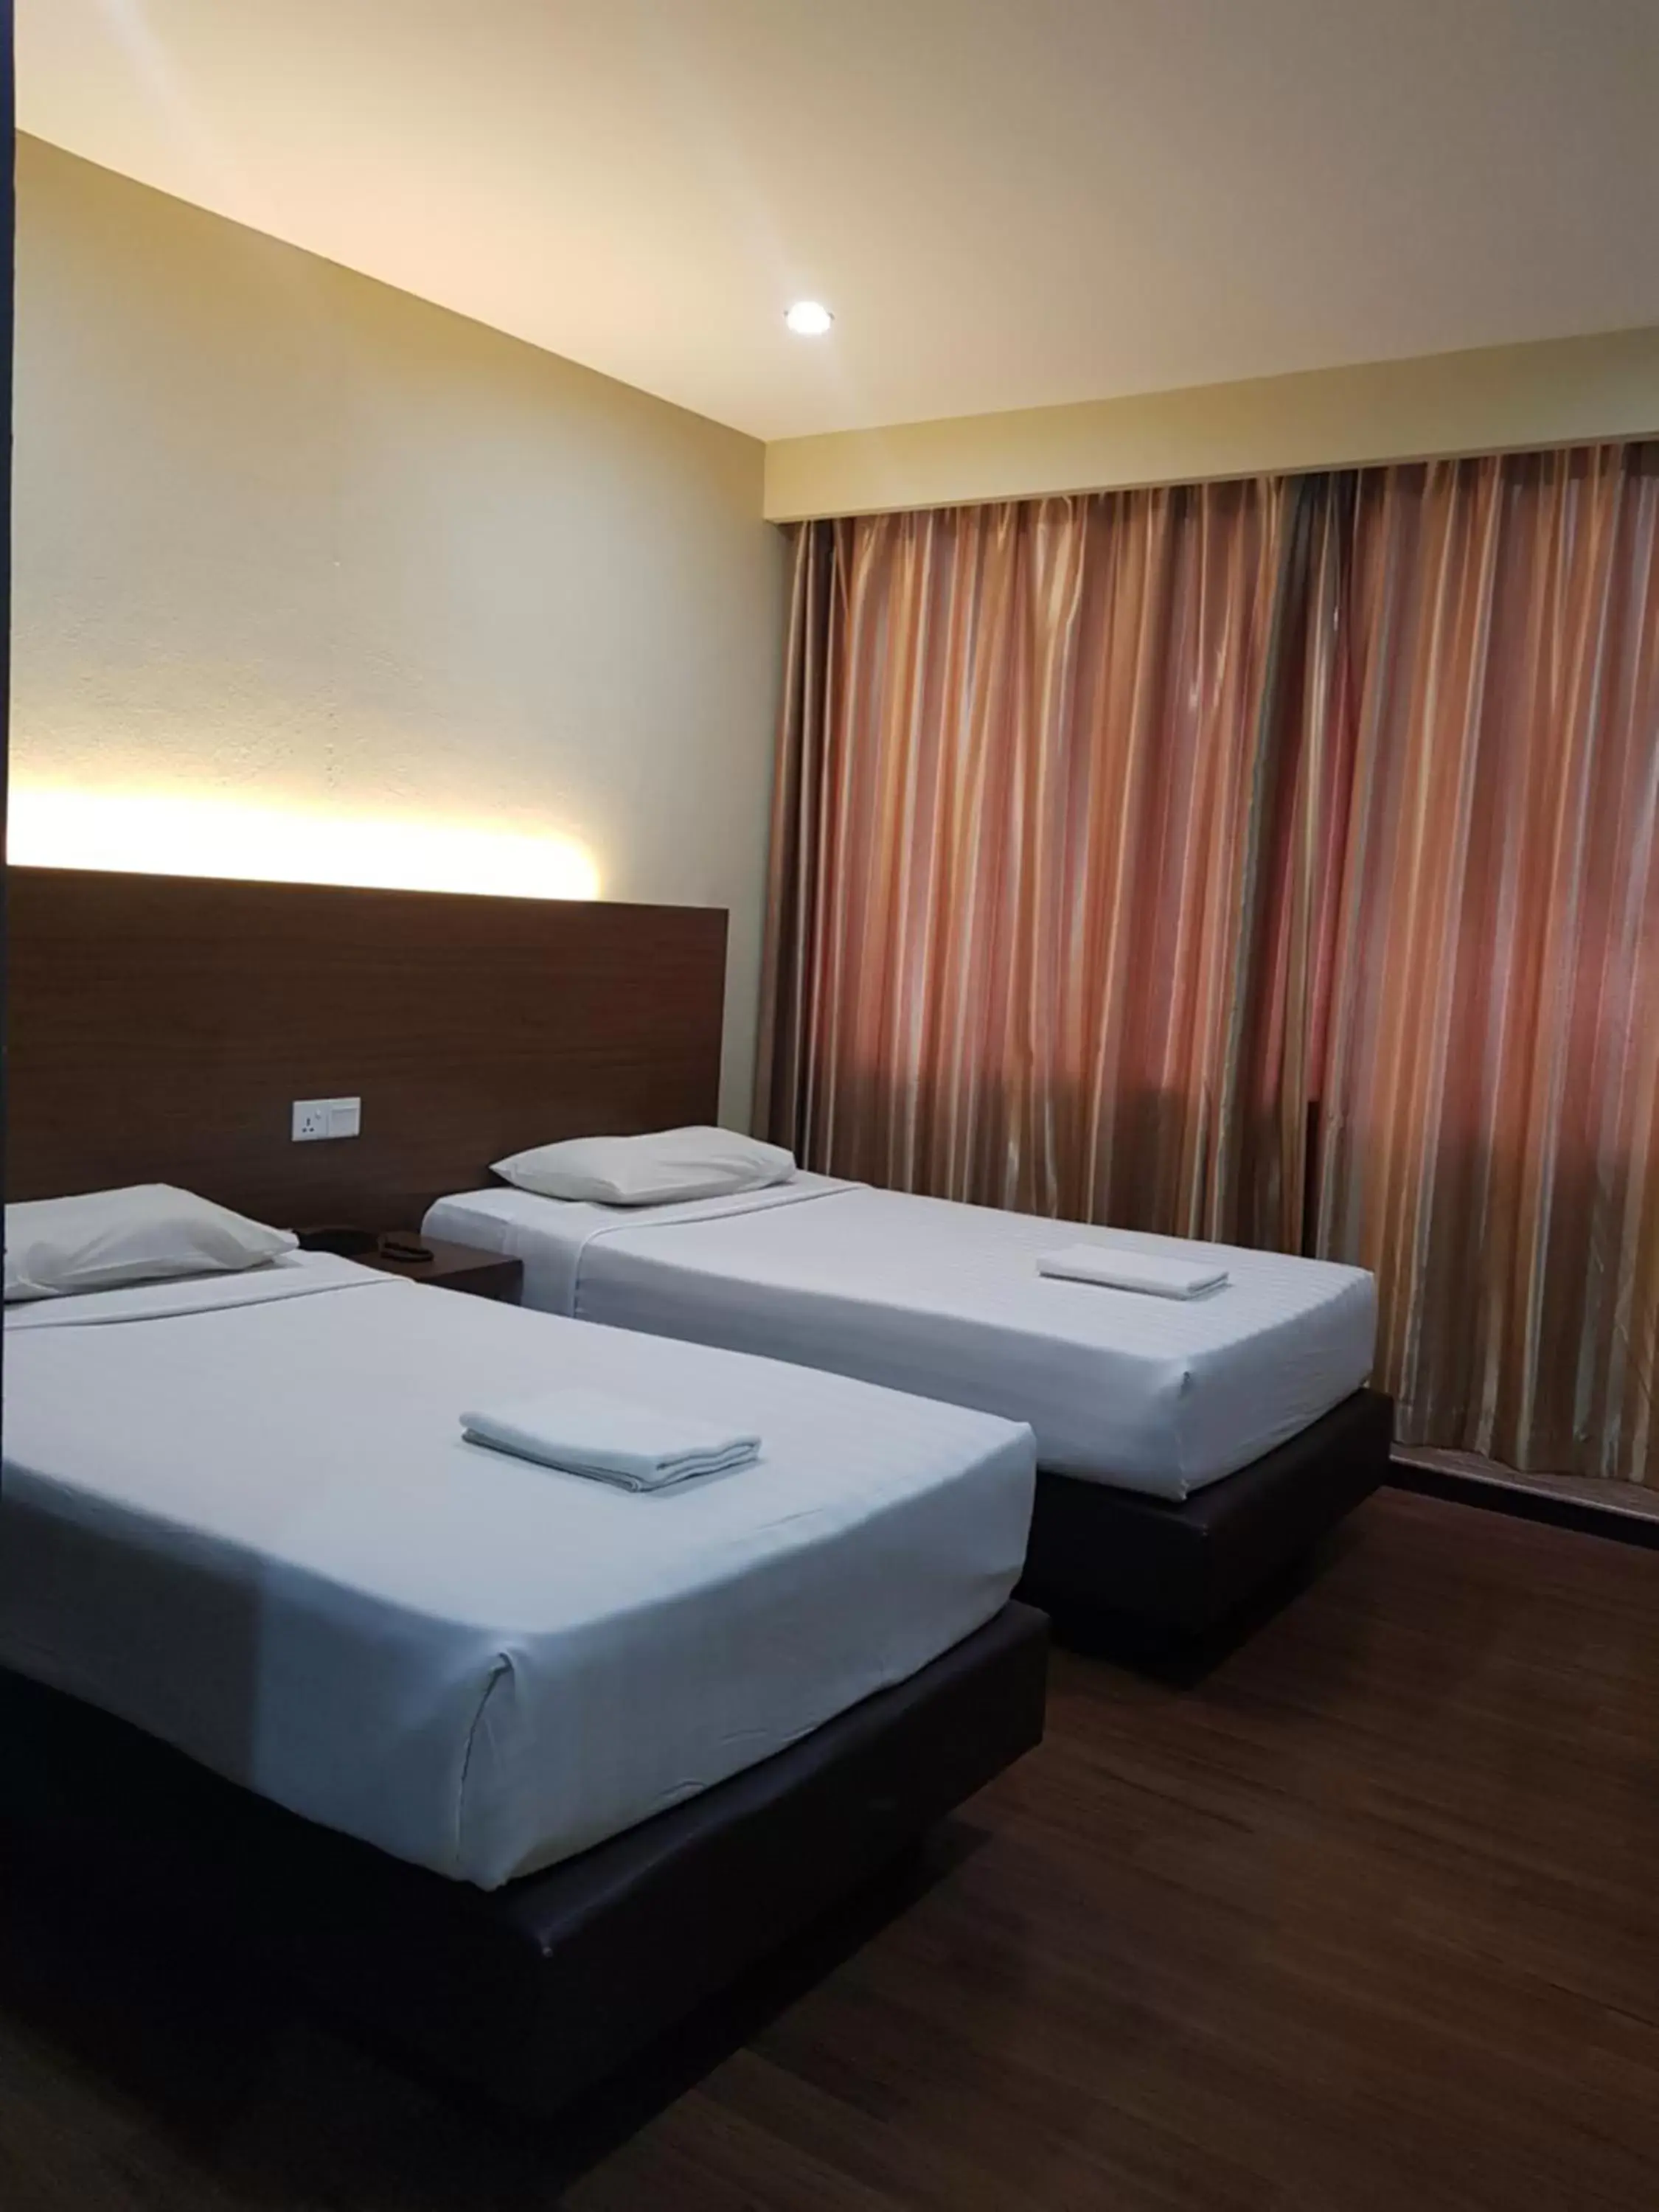 Bedroom, Bed in Garden Inn, Penang